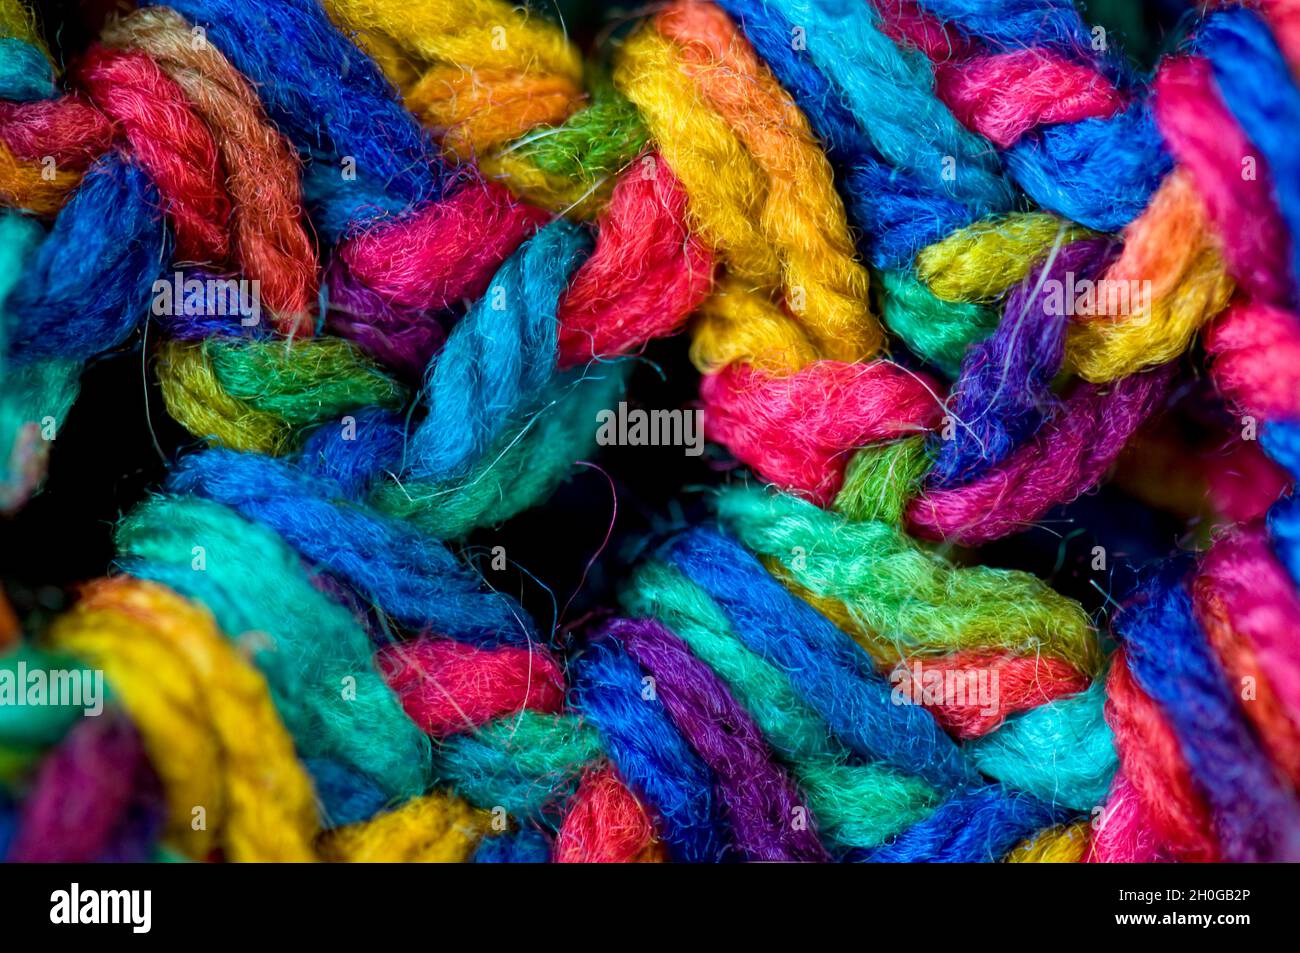 Primer plano de una manta con crocheted de colores brillantes Foto de stock